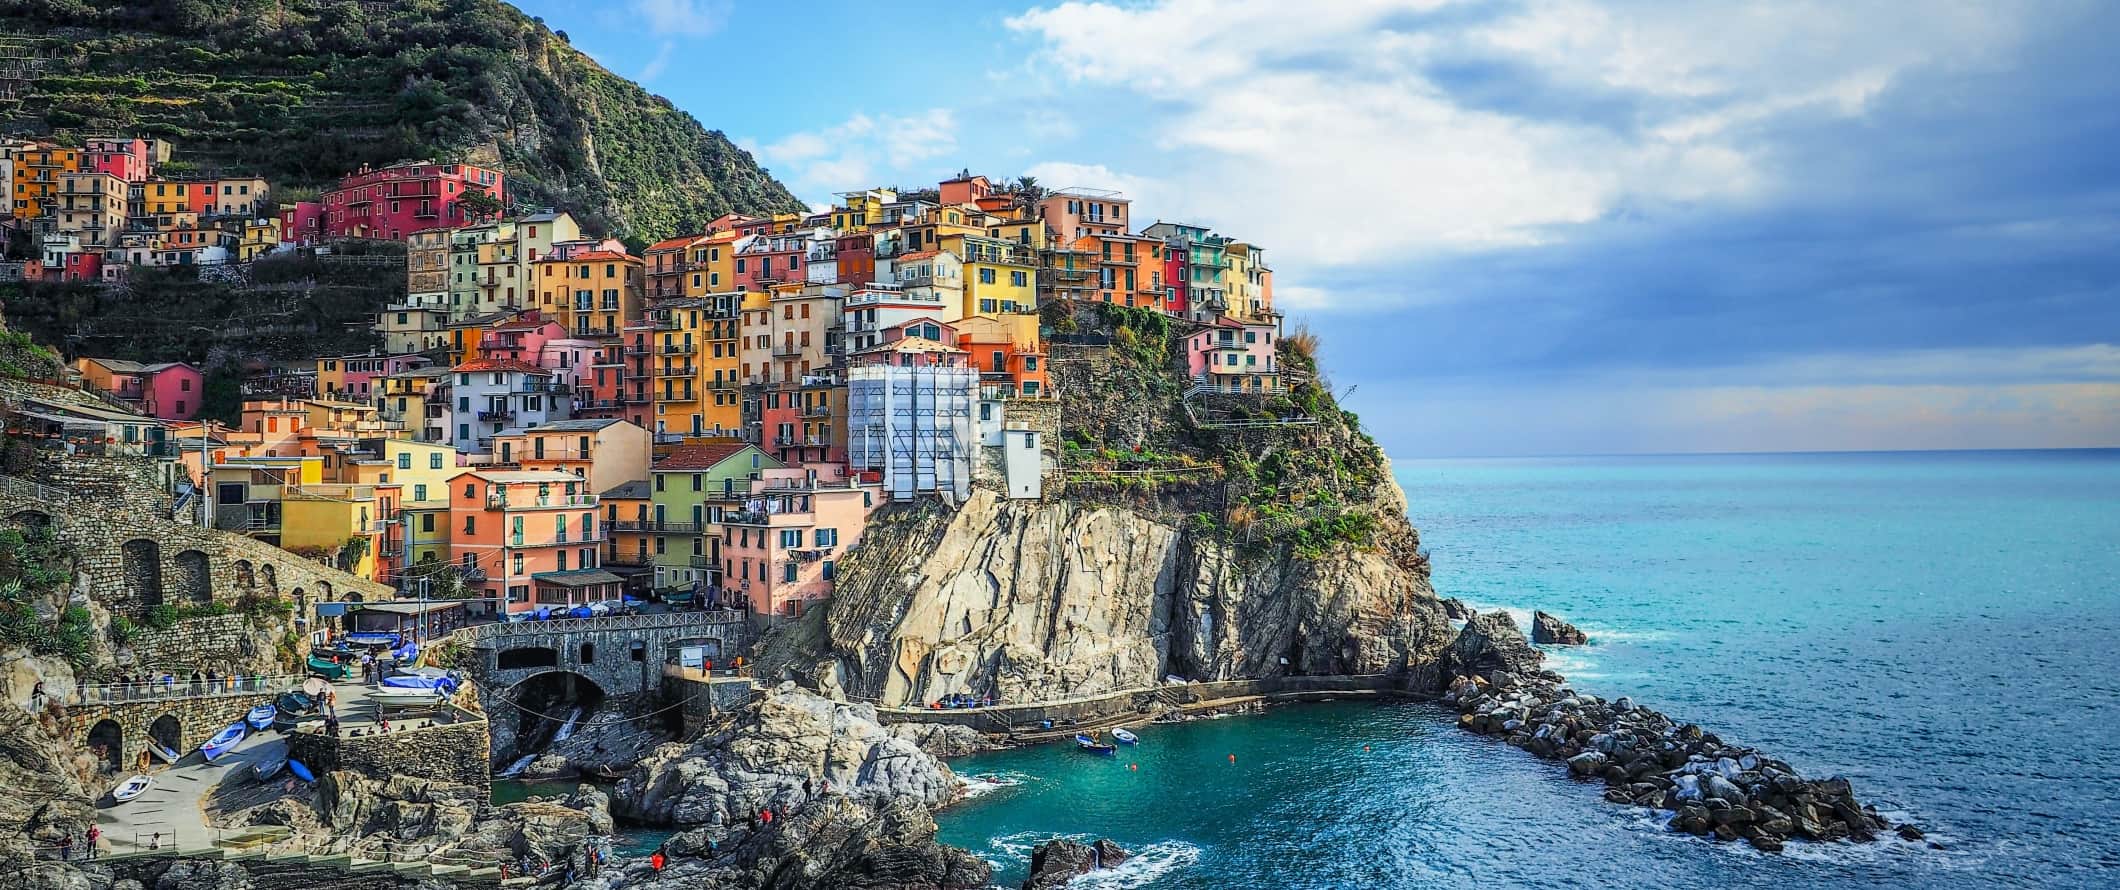 Vista de uma cidade colorida em Chinkwe-Terr, na costa da Itália.